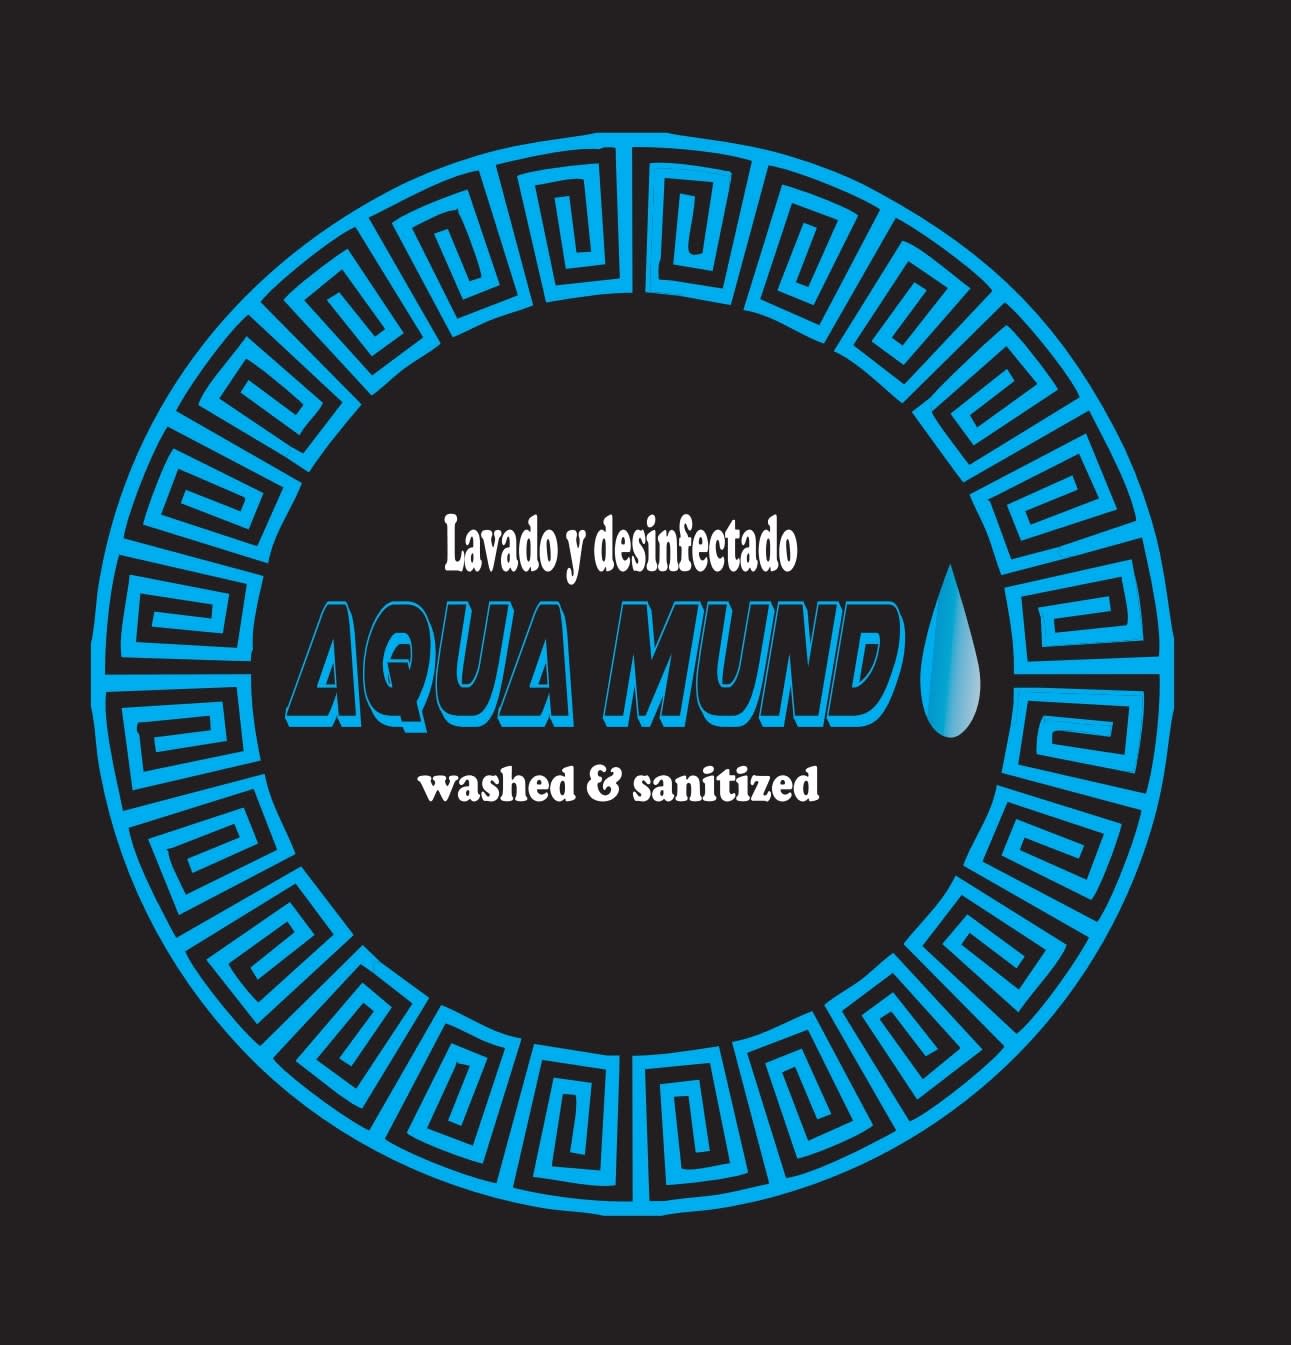 Aqua Munda